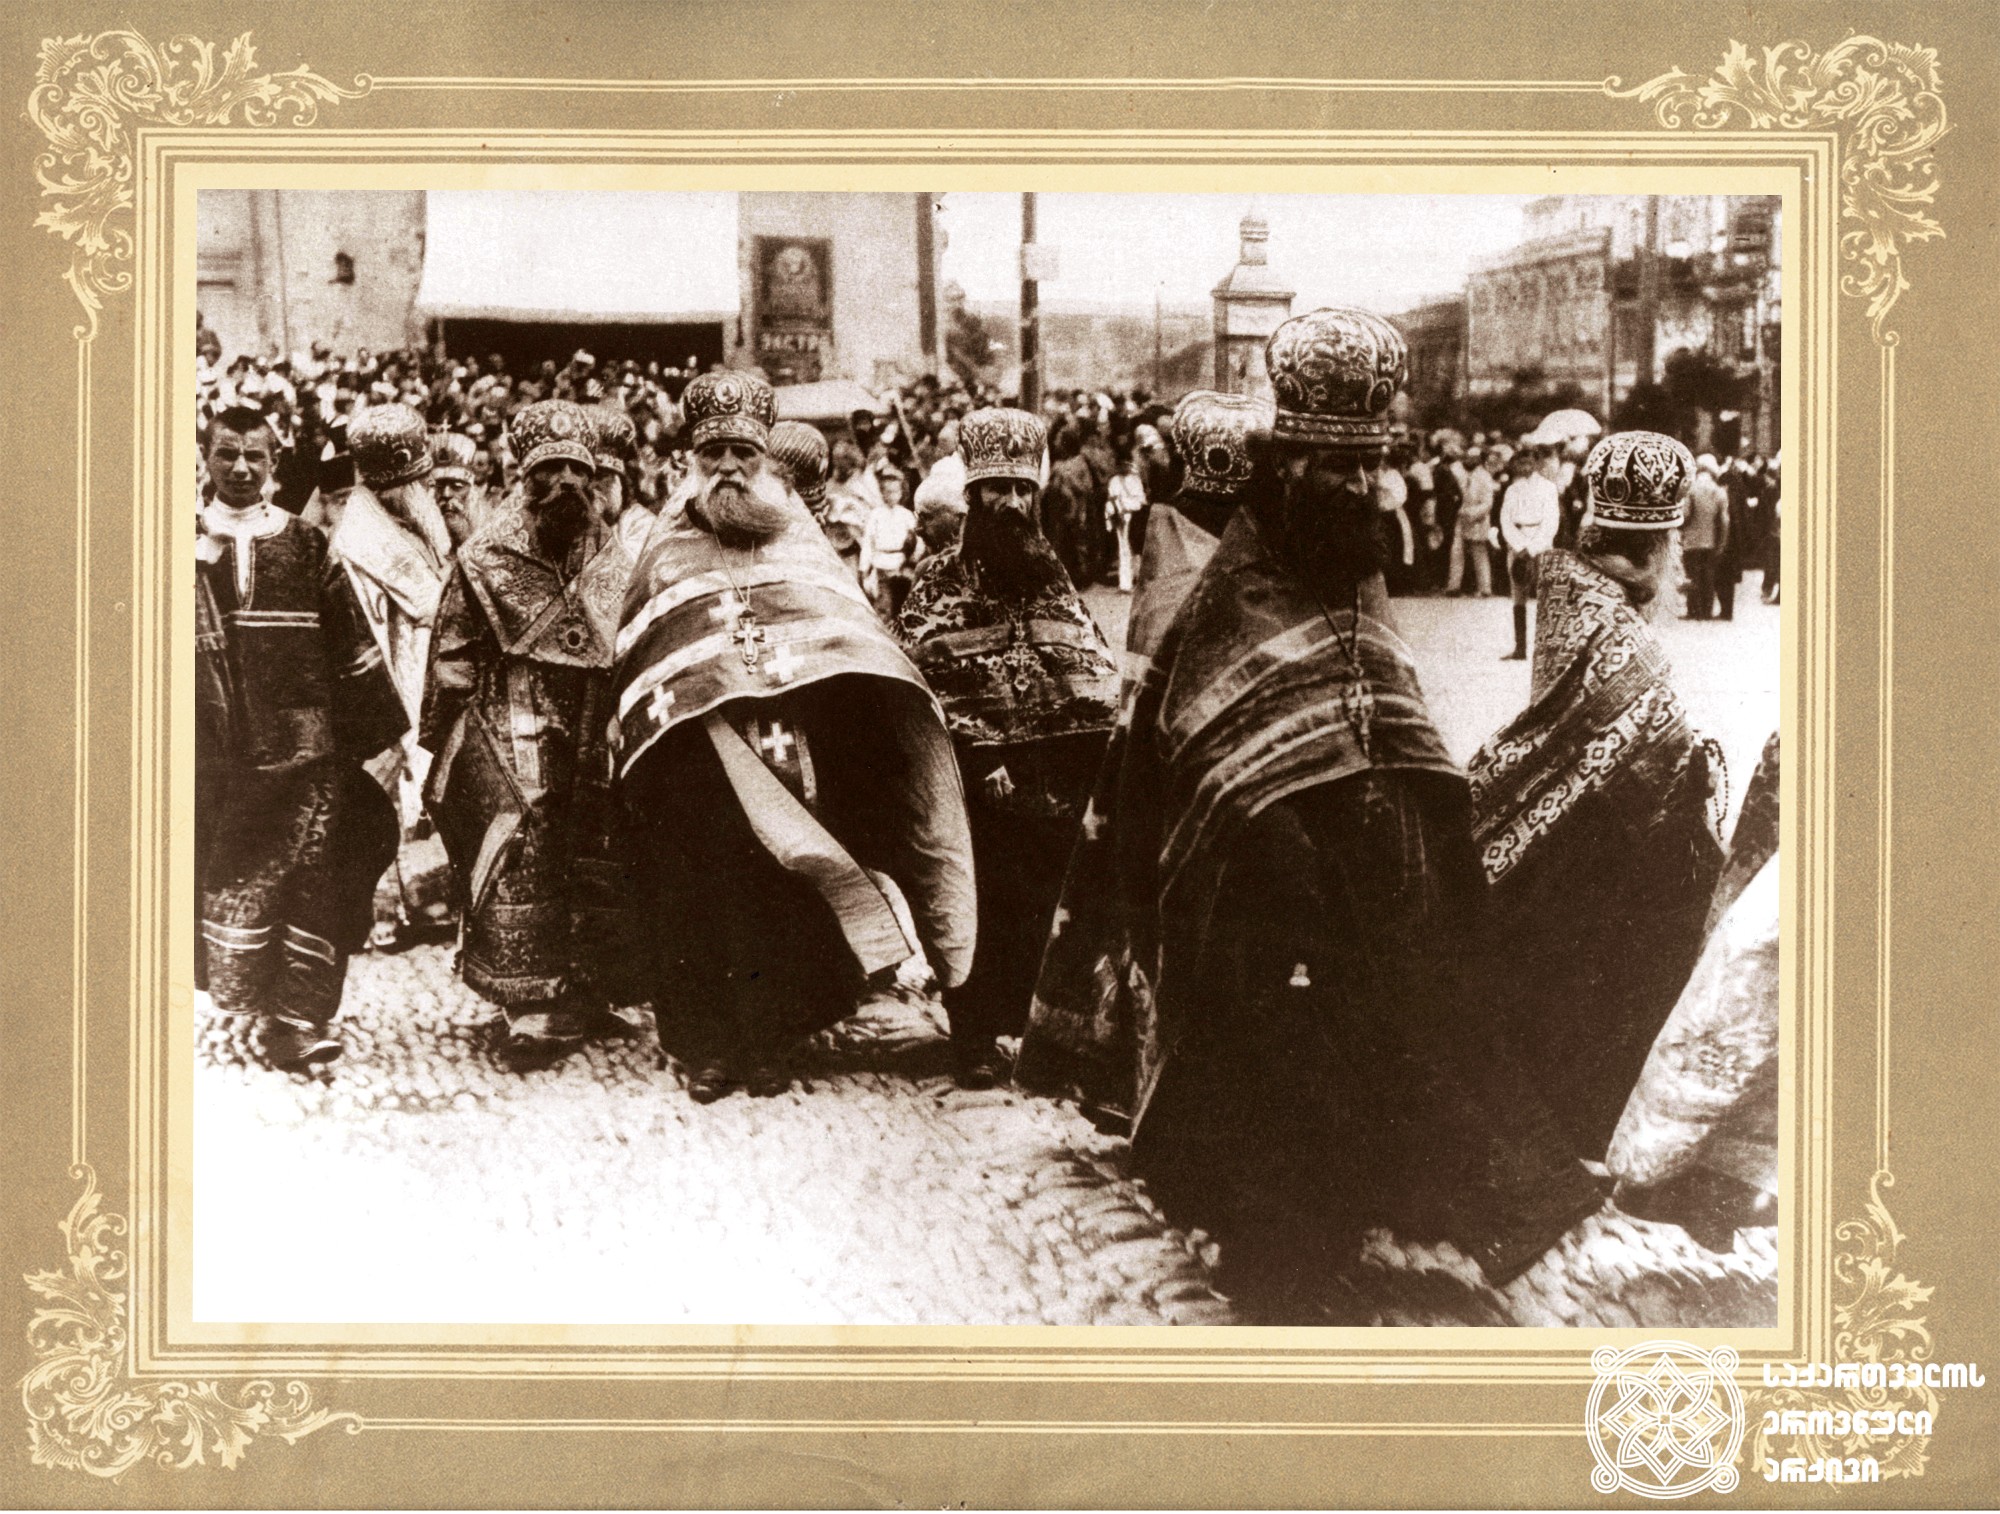 პატრიარქ კირიონ II-ის დაკრძალვა. <br>
თბილისი, 1918 წელი. <br>

Funeral of Patriarch Kyrion II. <br>
Tbilisi, 1918.